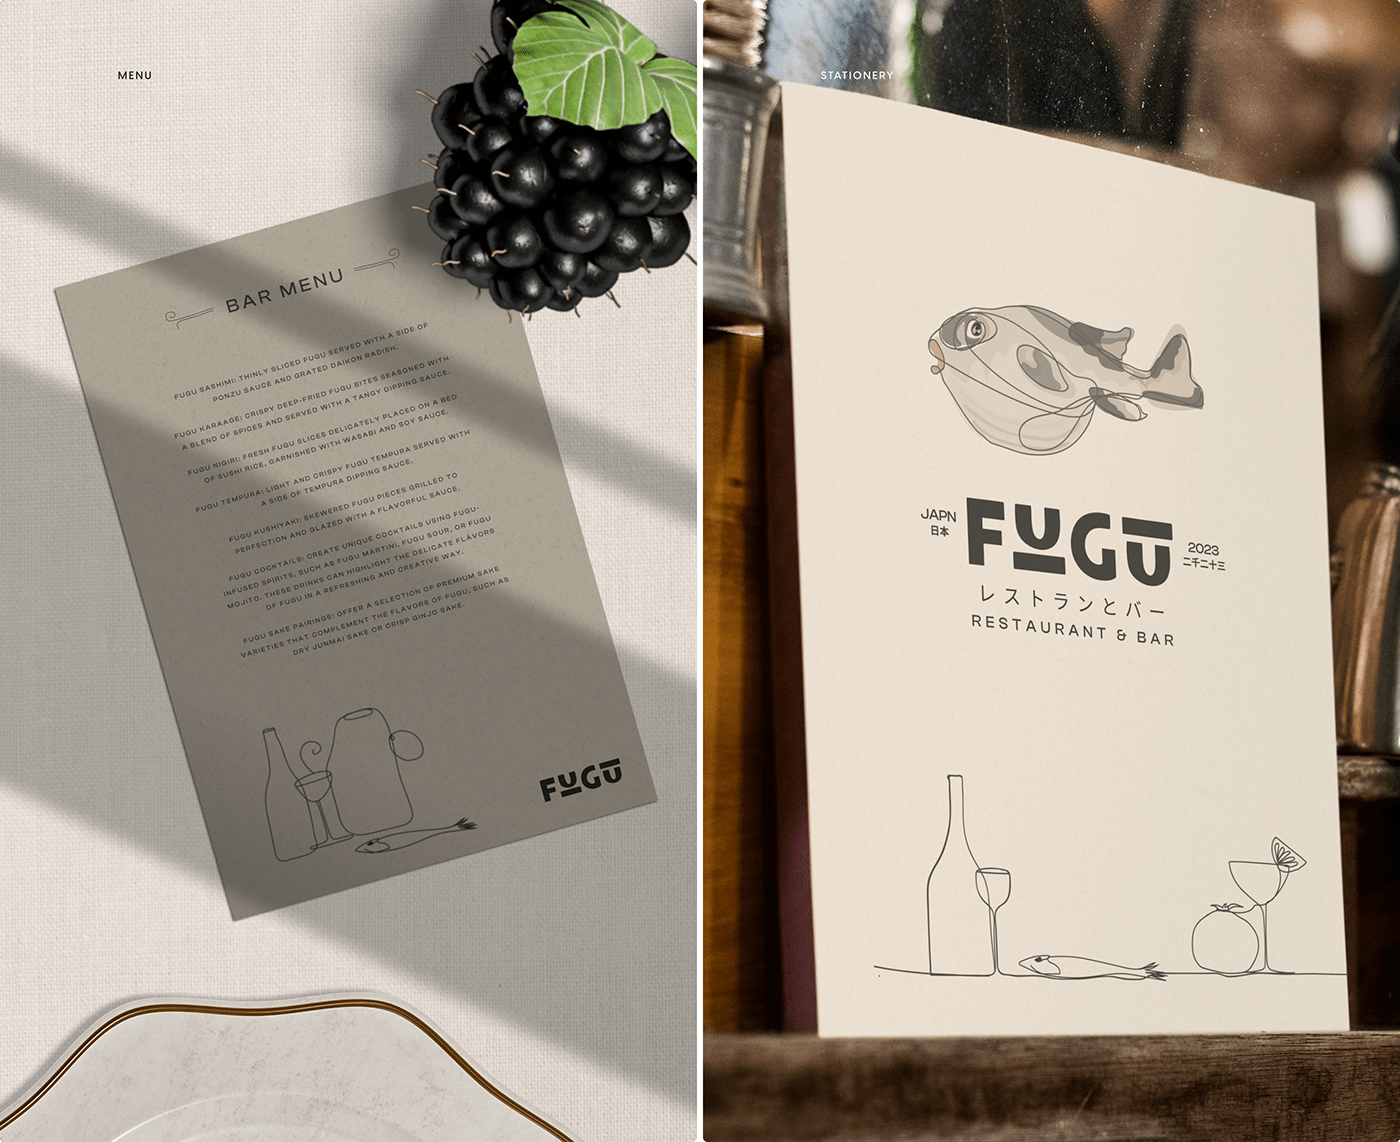 Fugu restaurant/bar menu design
